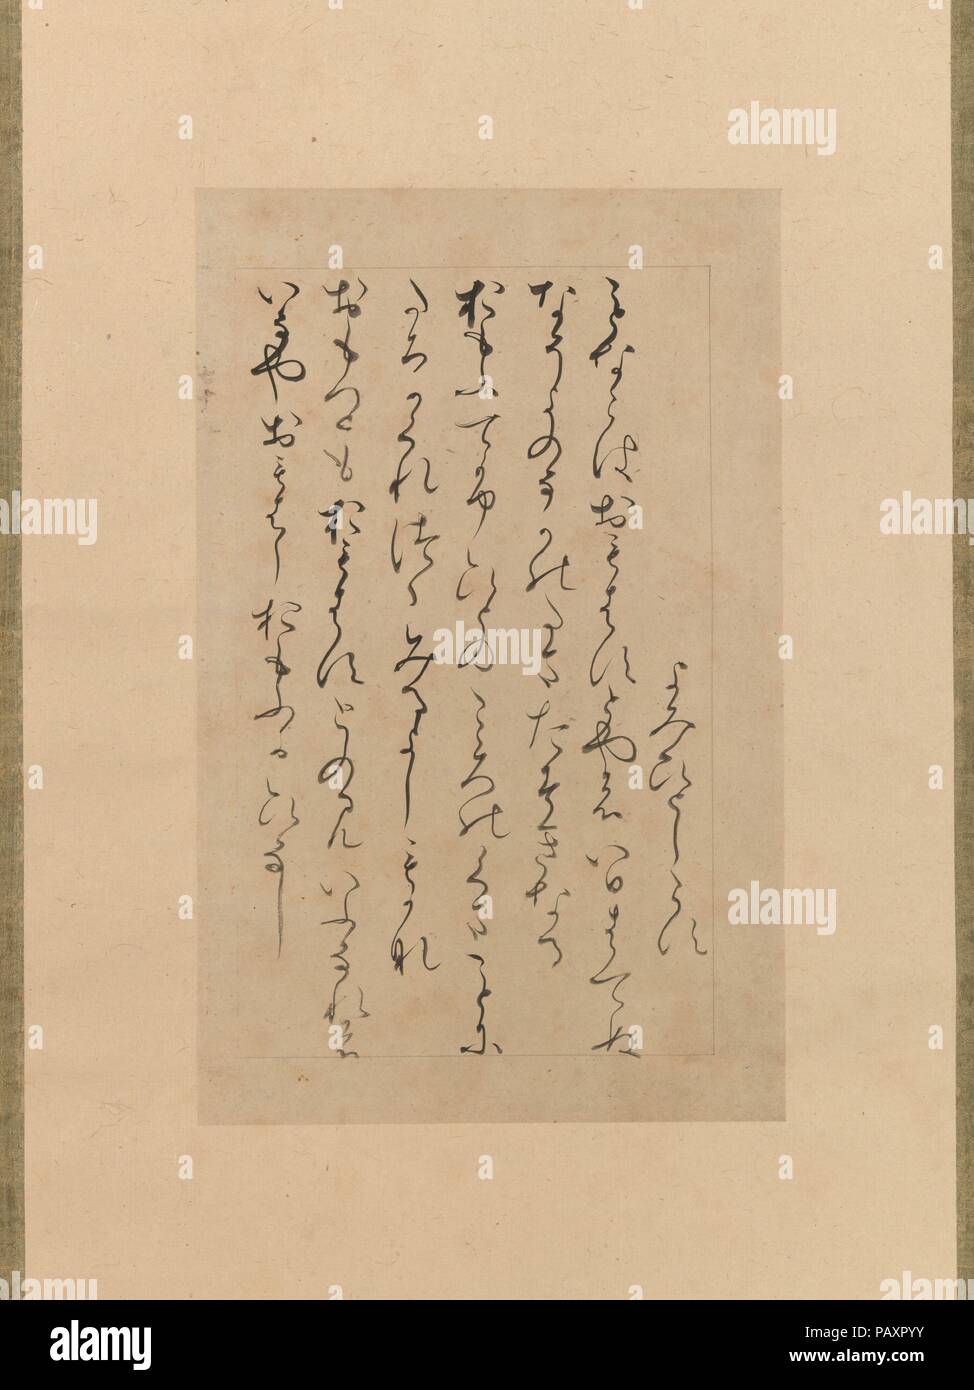 Tres poemas de la "Colección de poemas antiguos y modernos' (Kokin  wakashu), conocido como el "fragmento" (Imaki Imaki-Grupo Clarín). Artista:  caligrafía por Fujiwara no Norinaga (japonés, 1109-1180). Cultura: Japón.  Dimensiones: Imagen: 9